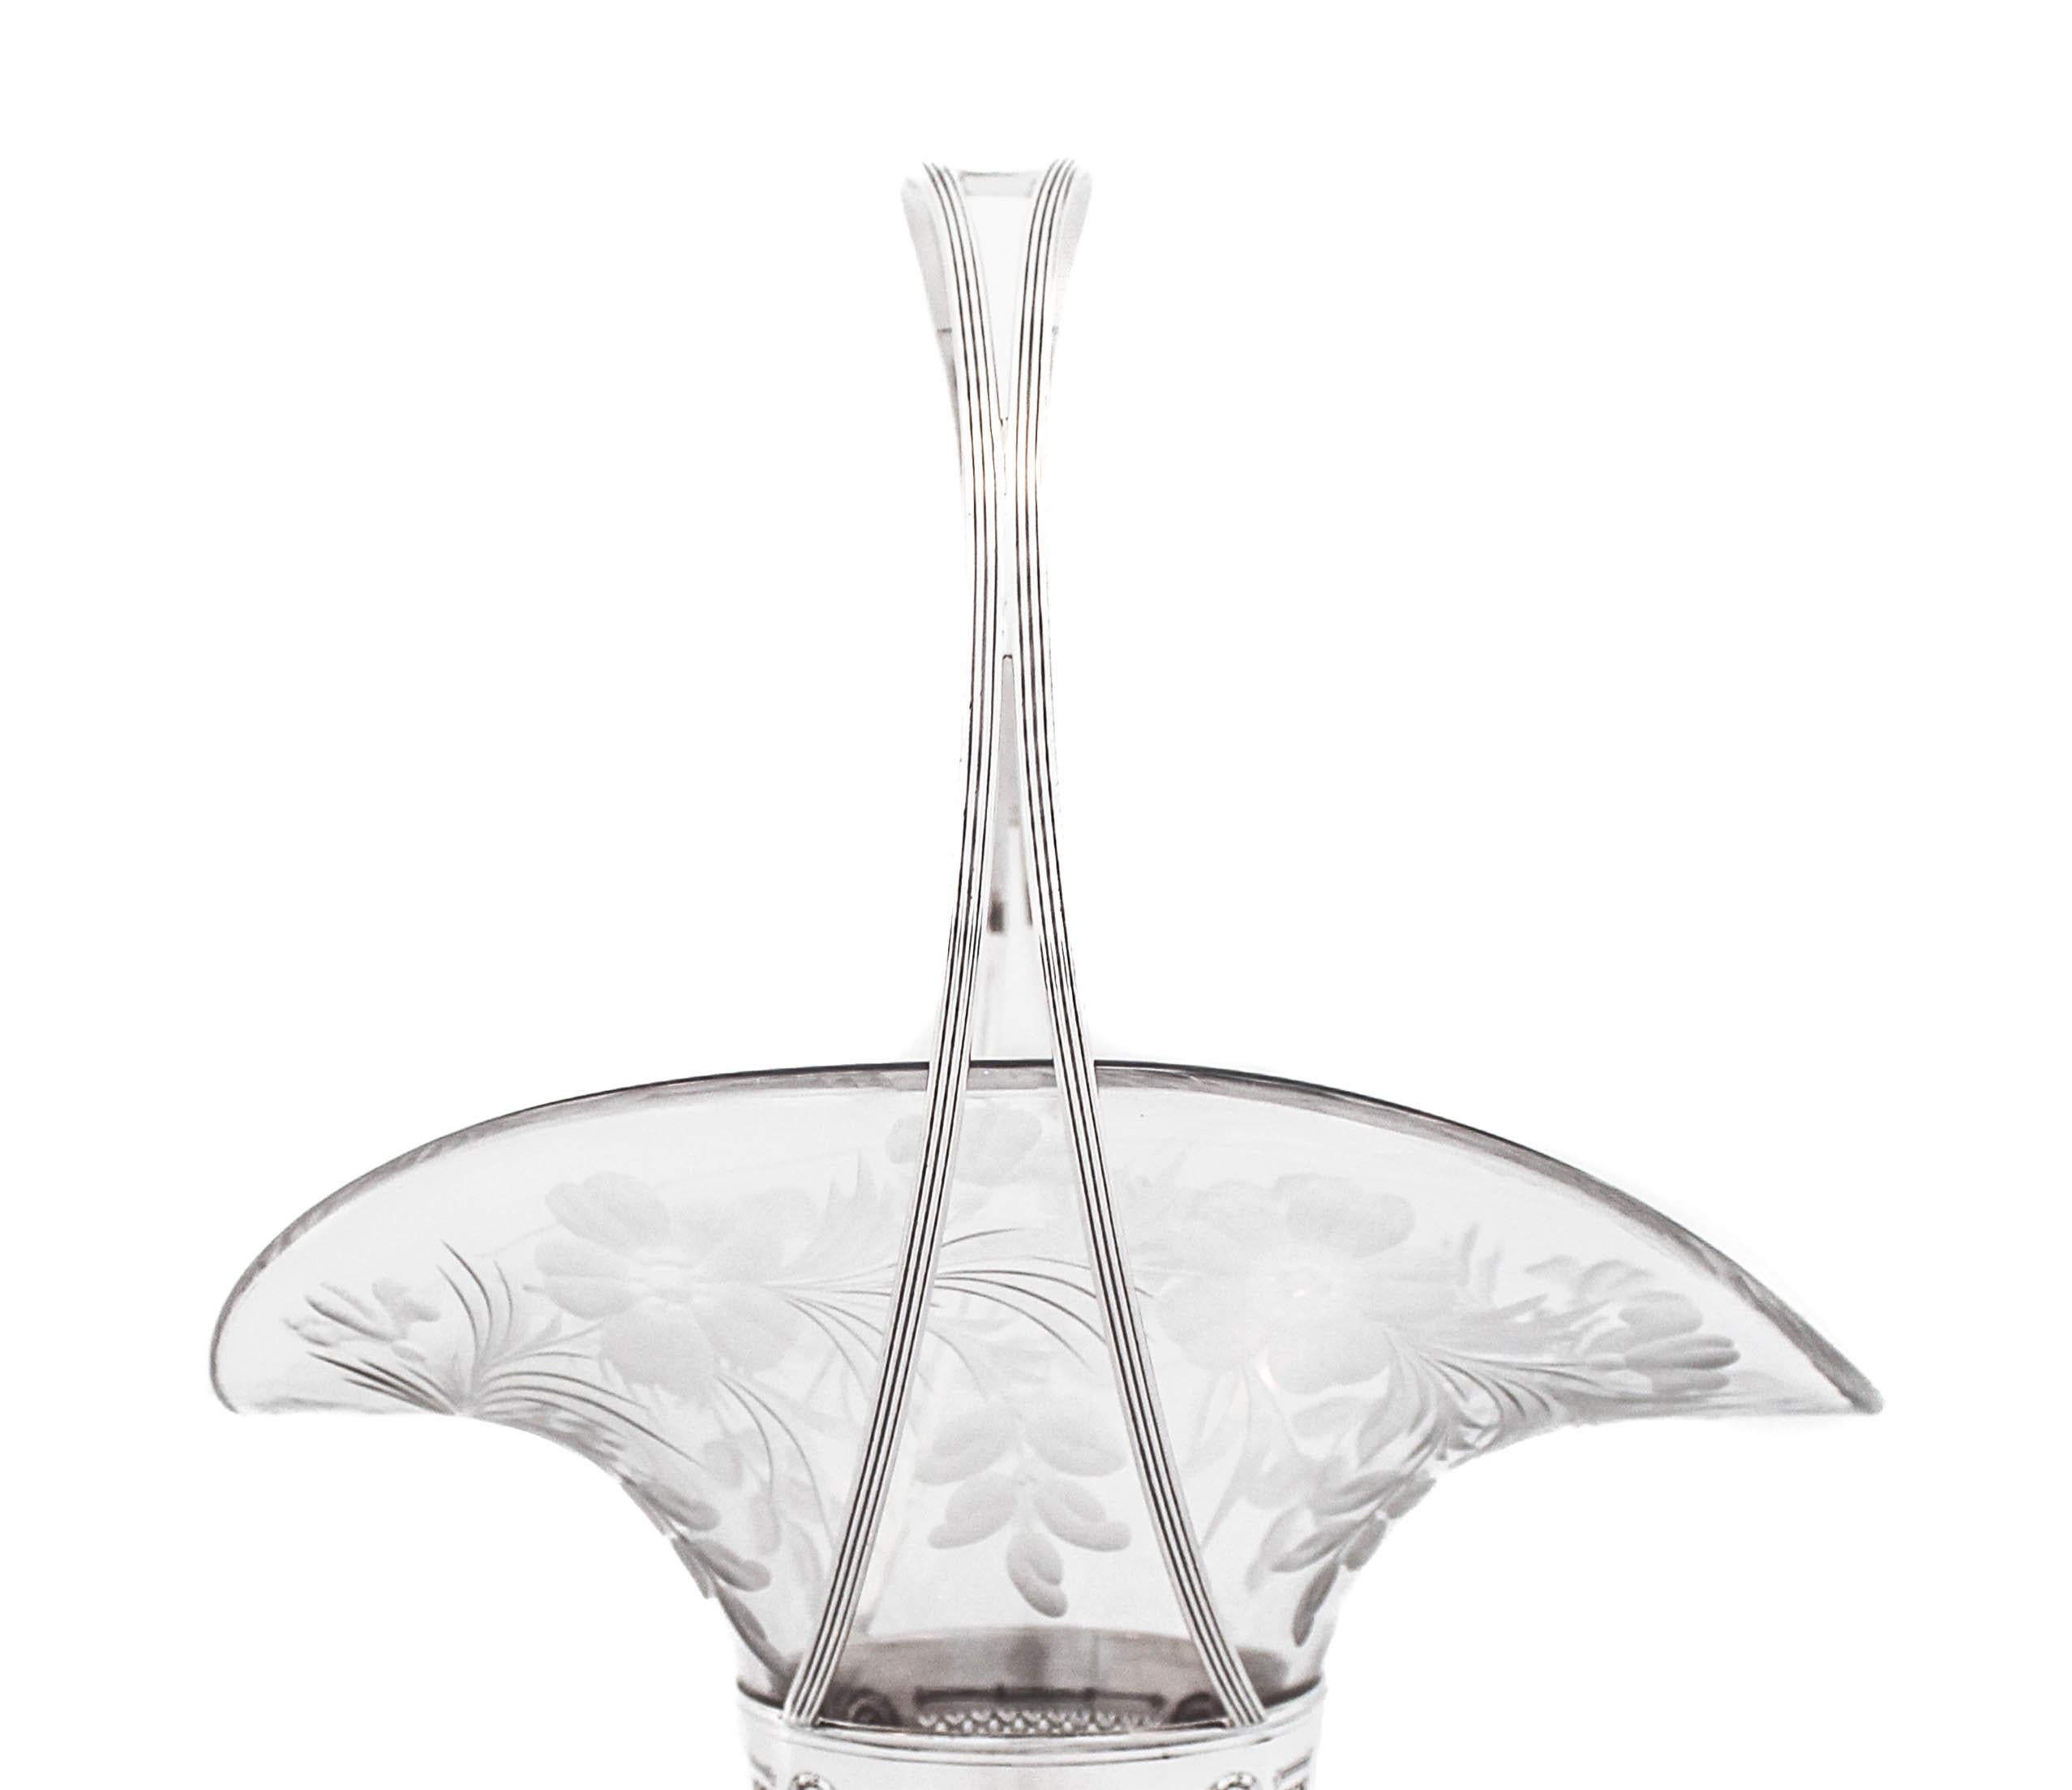 Nous vous proposons un vase en argent sterling avec anse (panier) fabriqué par Dominick and Haff de New York.  Il est doté d'une doublure en verre d'origine de forme ovale avec un motif floral gravé à l'acide.  La partie supérieure de l'argent est